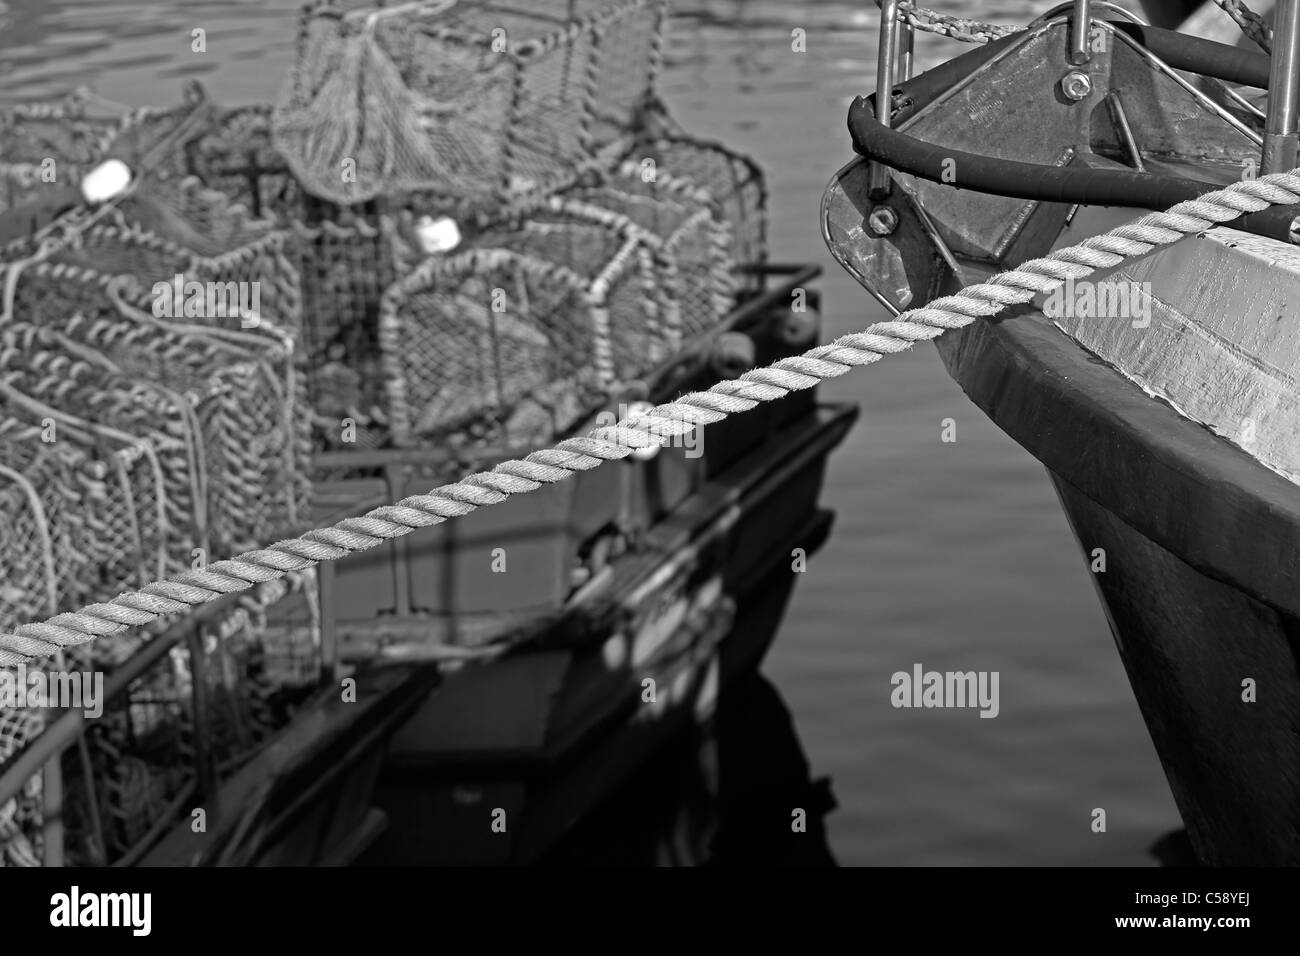 Schwarz-weiß-Bild der Szene in Hout Bay Hafen mit einem Boot, Seile und Krebse Töpfe. Stockfoto